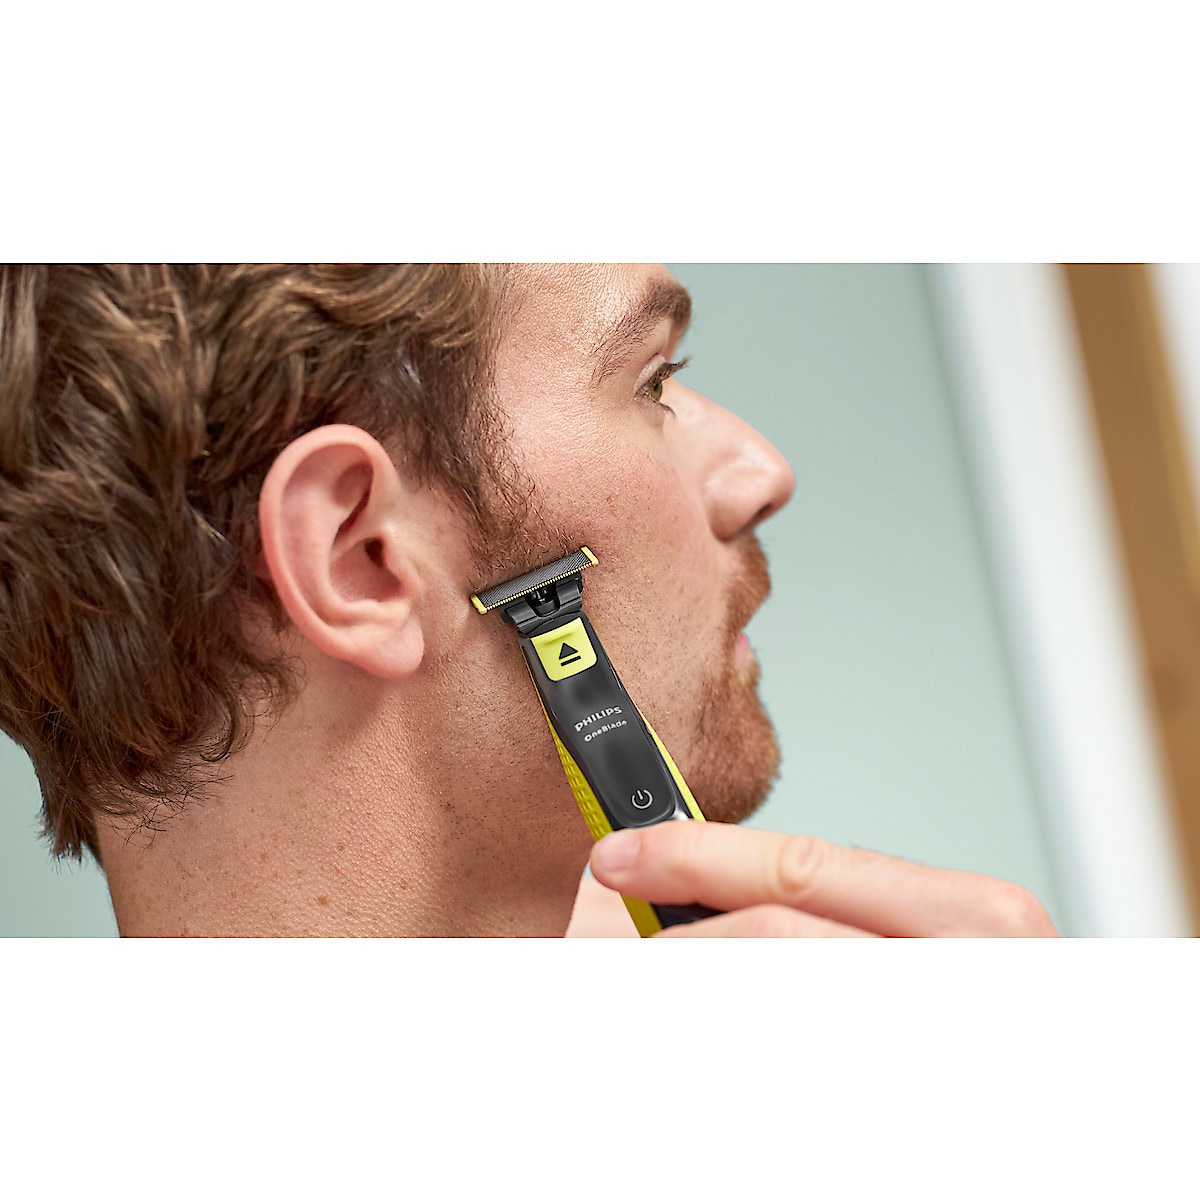 Philips OneBlade Face and Body QP2620/20 Sähkökäyttöinen partahöylä